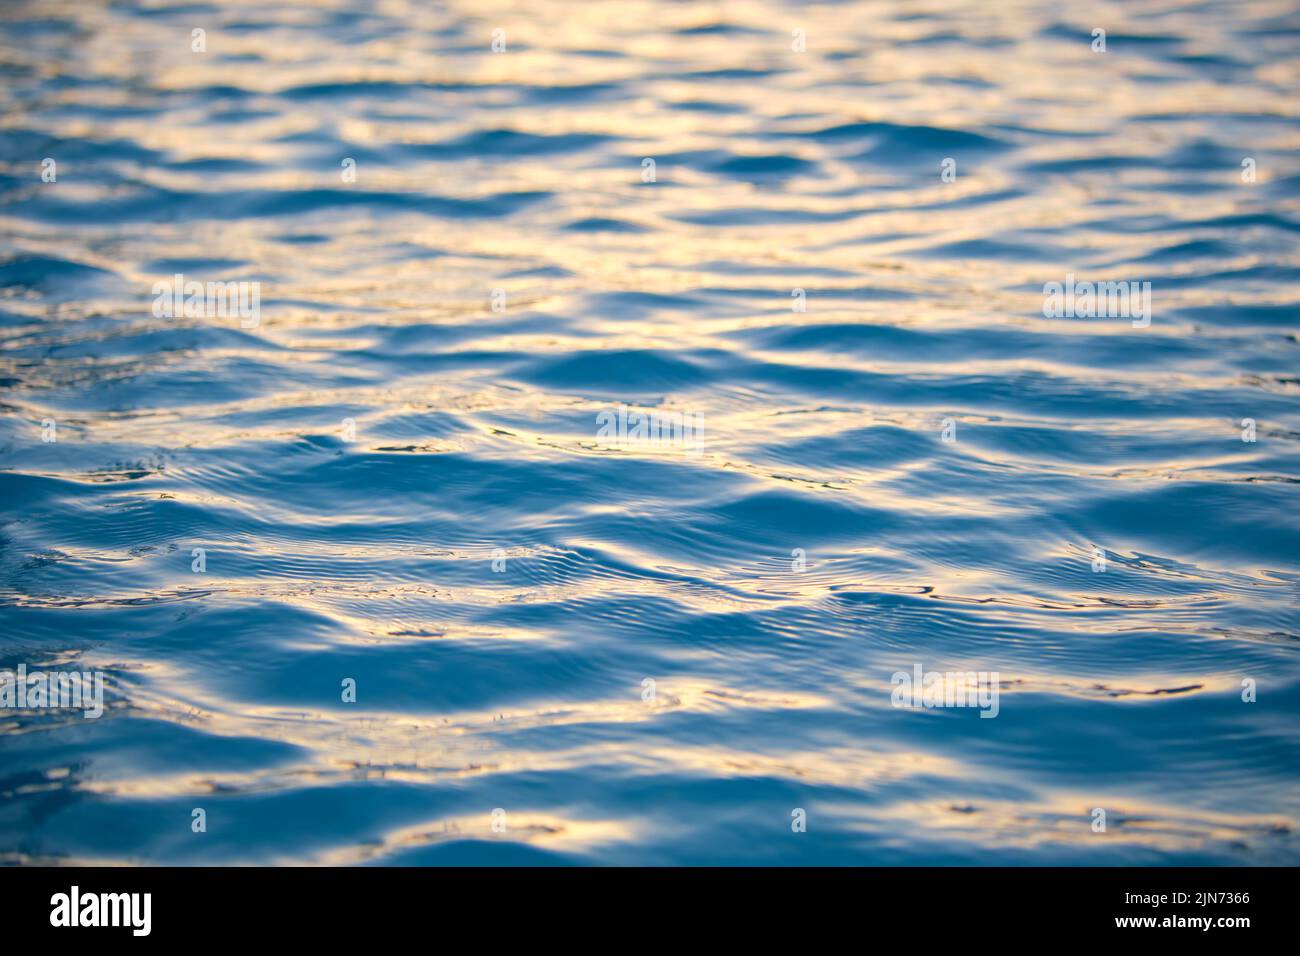 Gros plan d'eau de mer bleu avec petites vagues ondulées Banque D'Images